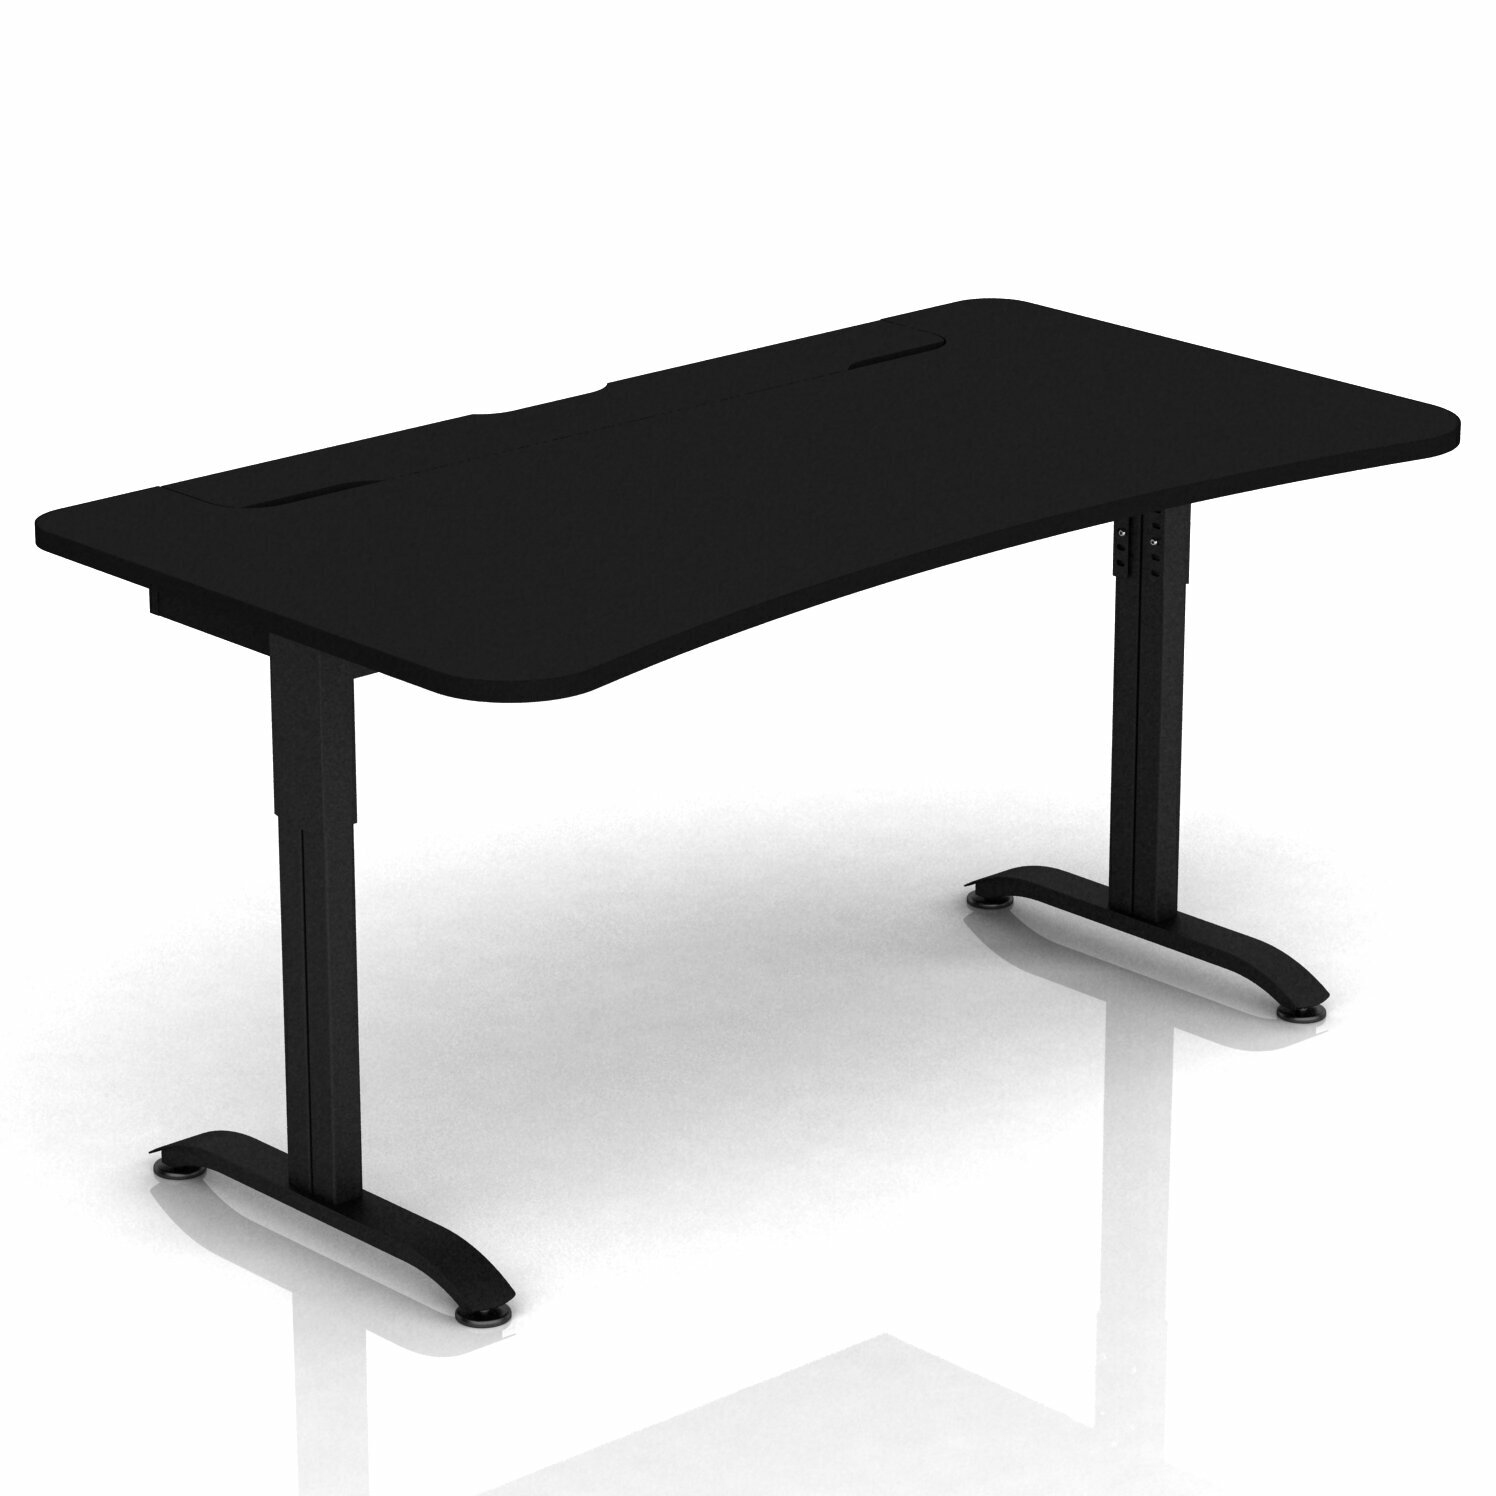 Геймерские игровые столы и кресла Стол DX ARENA чёрный